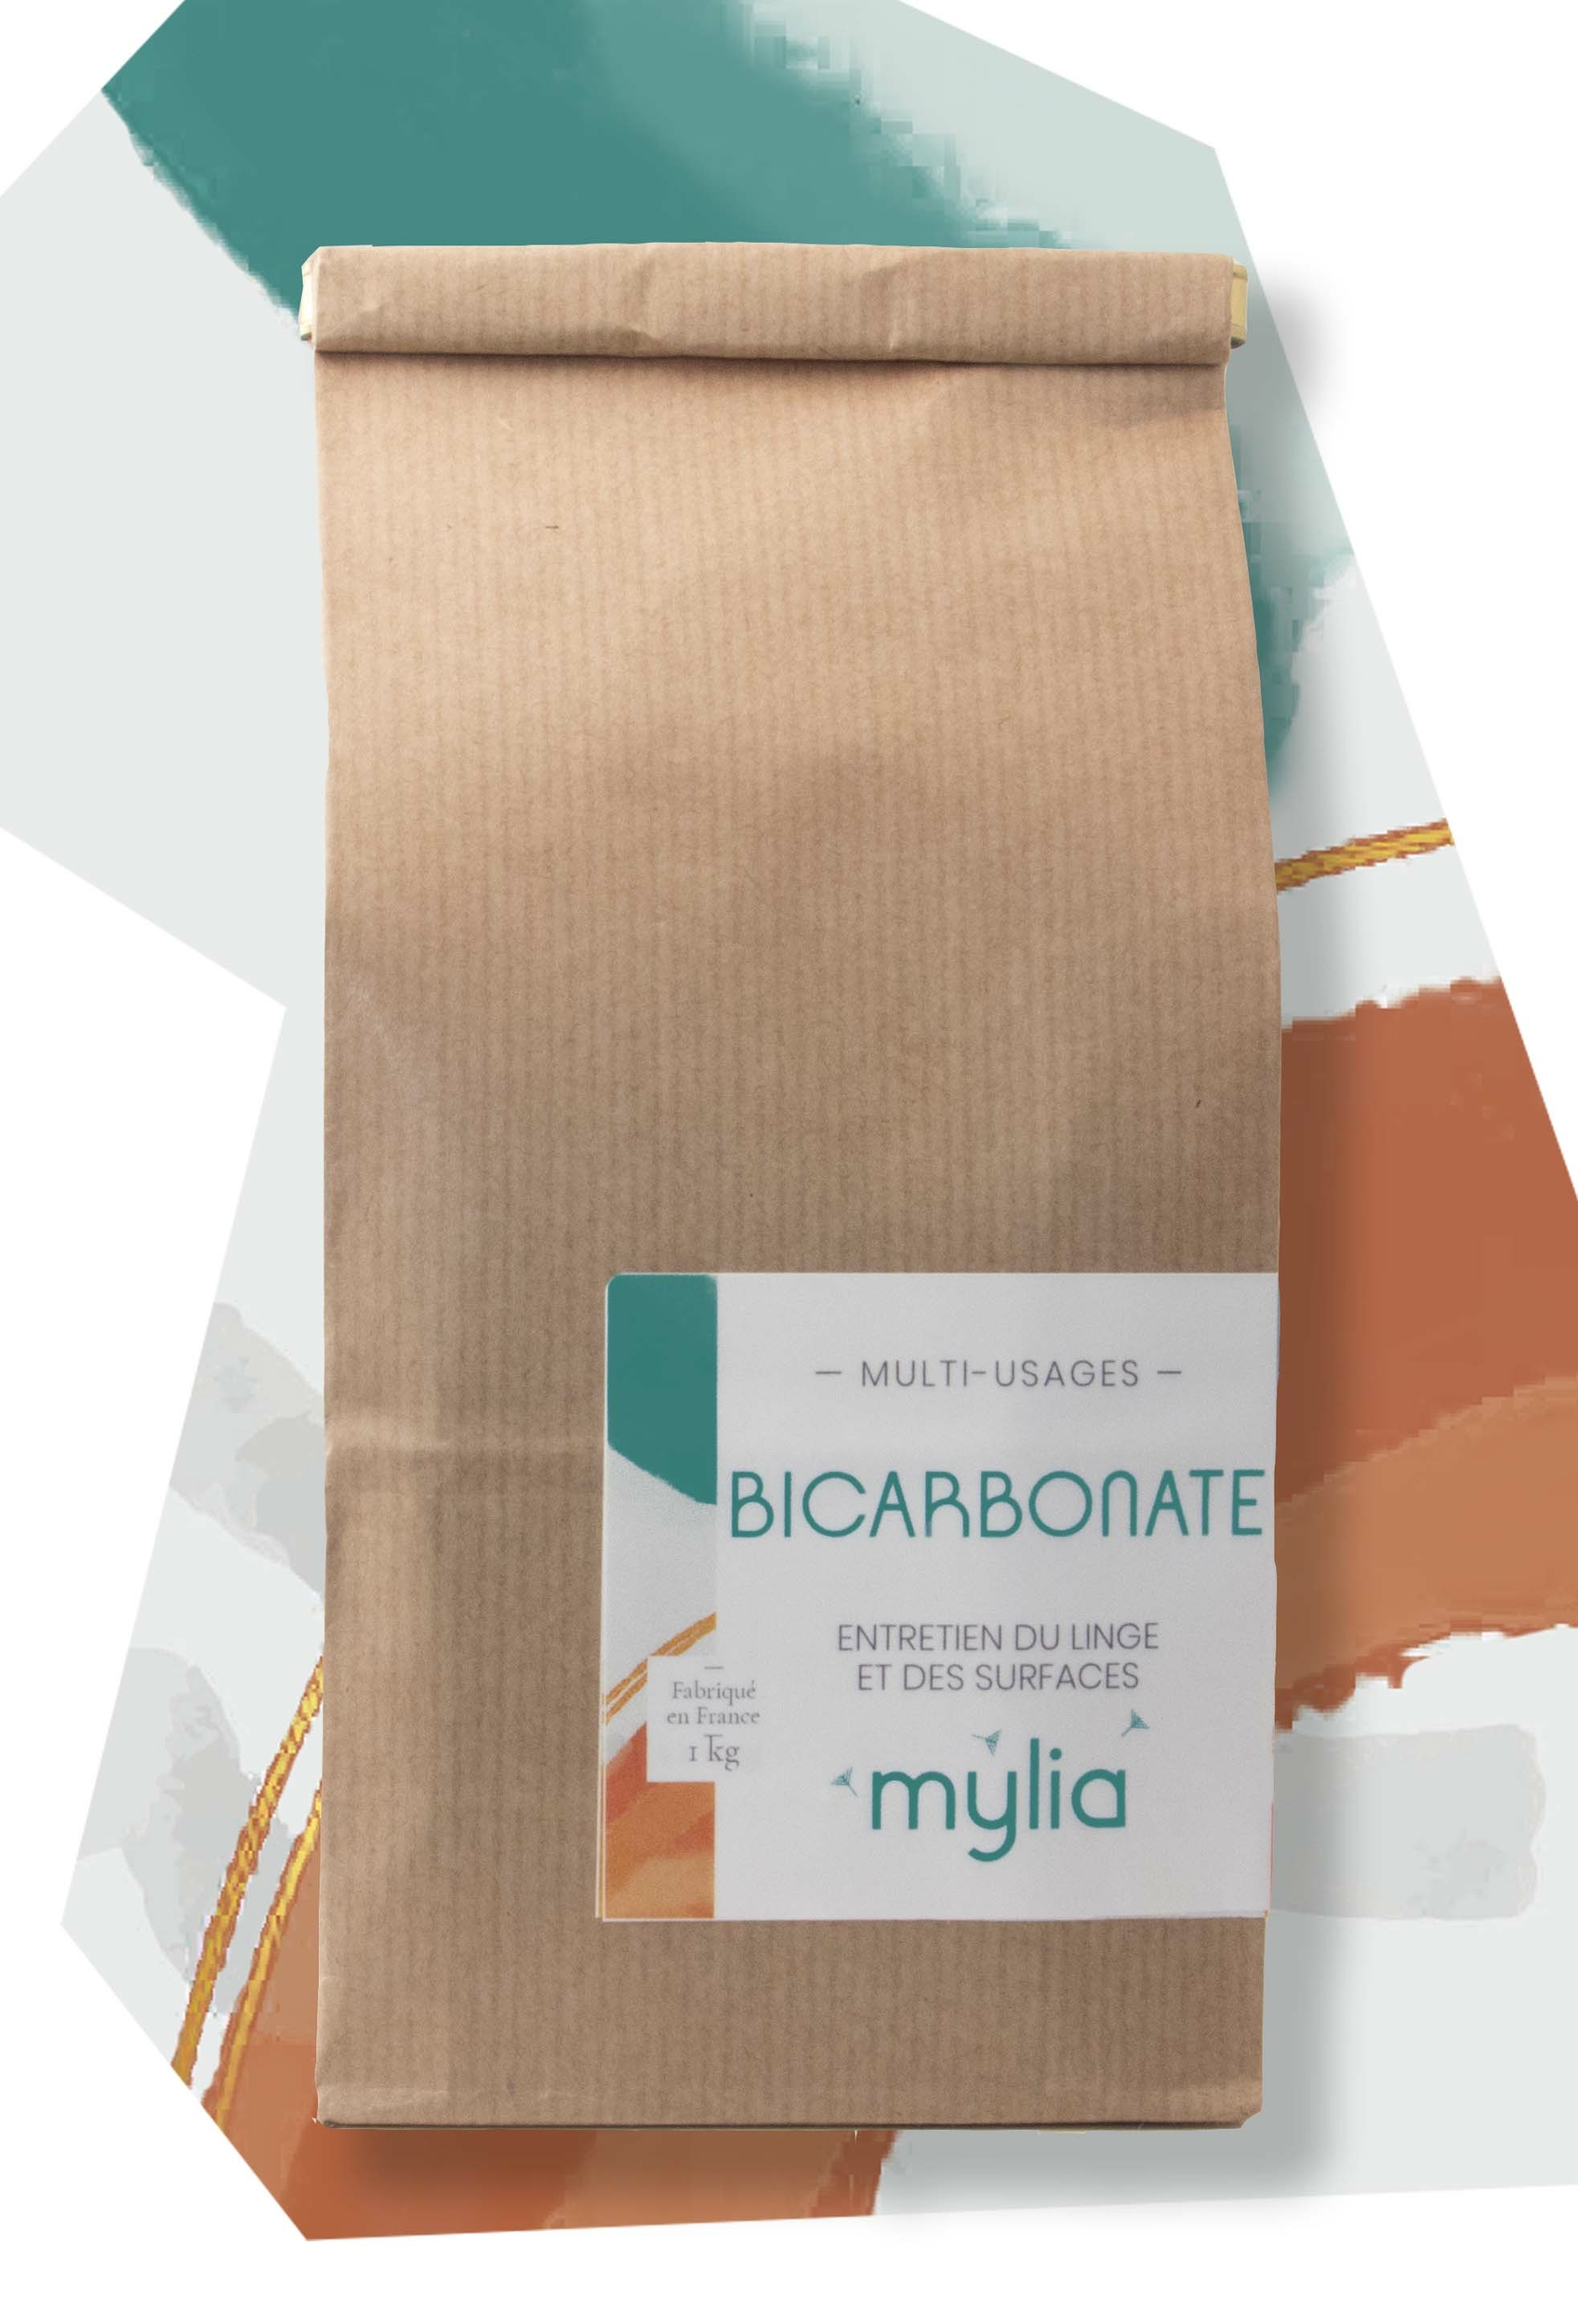 Sachet de Bicarbonate mylia